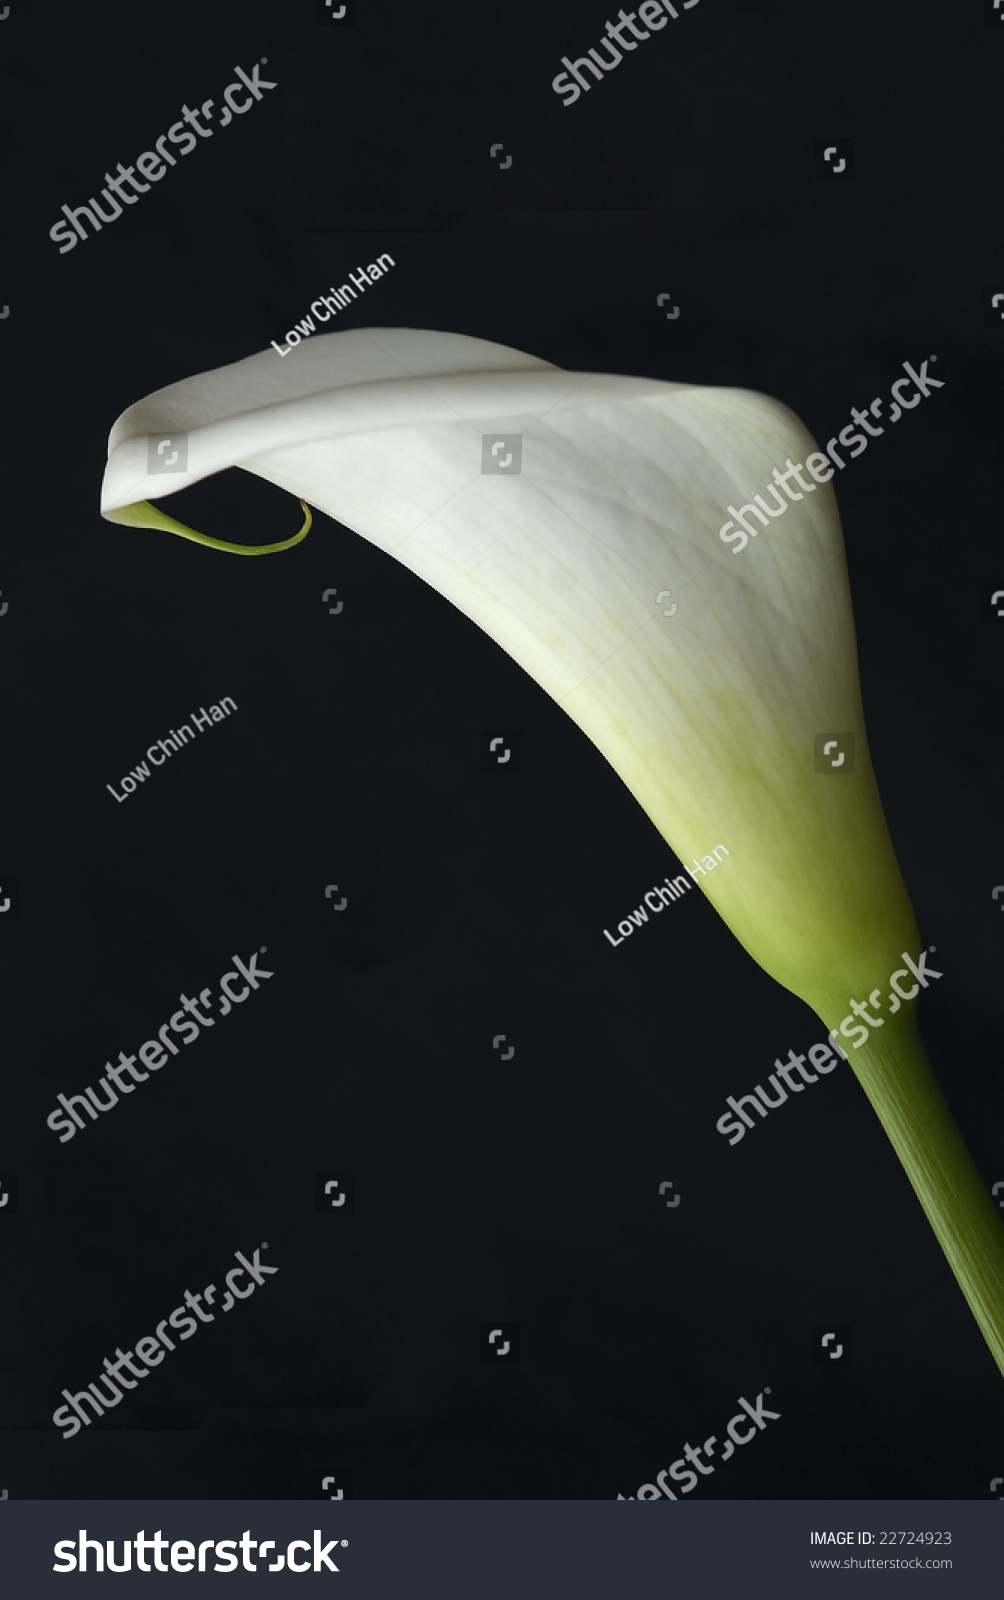 Flower - White Anthurium Stock Photo 22724923 : Shutterstock